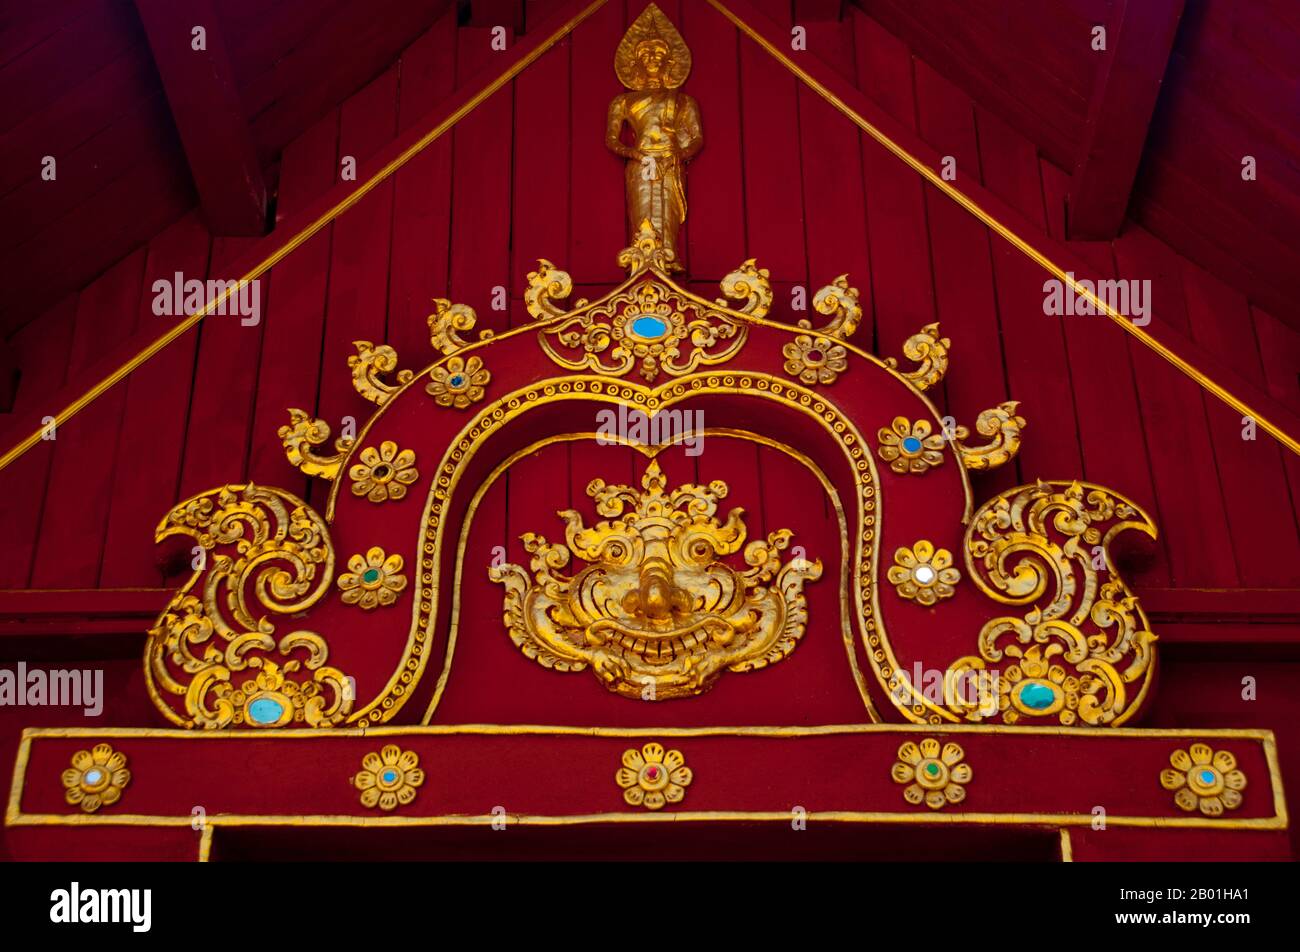 Thailand: Das körperlose Oberhaupt der hinduistischen Gottheit Rahu über einer Tür bei Wat Chiang Chom (Wat Chedi Plong), Chiang Mai. In der Hindumythologie ist Rahu eine Schlange, die die Sonne oder den Mond verschluckt und Sonnenfinsternis verursacht. In der Kunst wird er als Drache ohne Körper dargestellt, der auf einem Wagen reitet, gezeichnet von acht schwarzen Pferden. Rahu ist einer der Navagrahas (neun Planeten) in der Vedic Astrologie. Die Rahu Kala (Tageszeit unter dem Einfluss von Rahu) gilt als ungünstig. Stockfoto